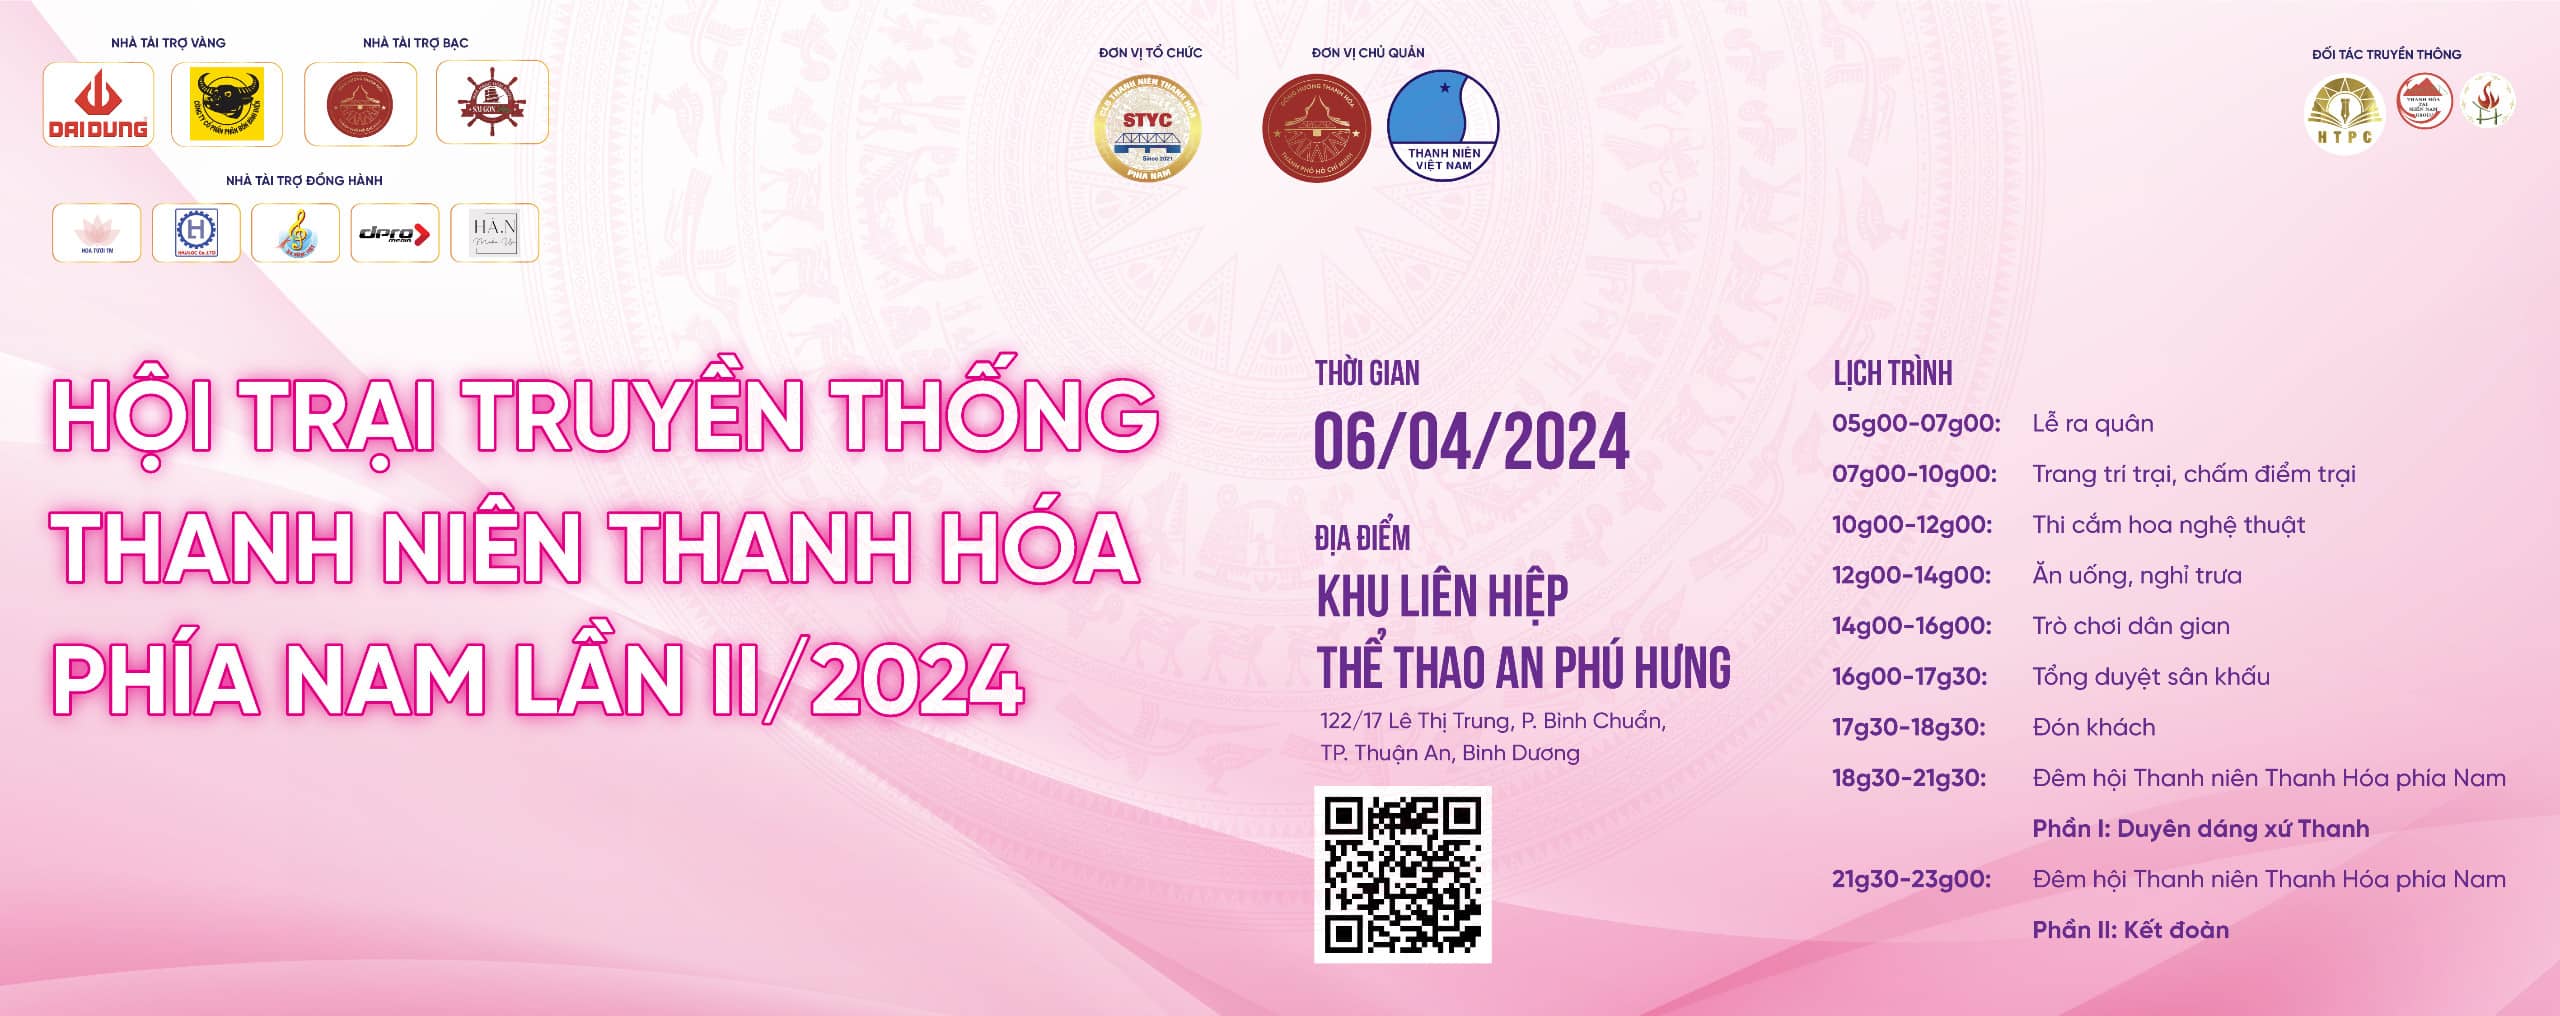 You are currently viewing Thông báo thay đổi địa điểm tổ chức Hội trại thanh niên Thanh Hóa phía Nam lần II/2024